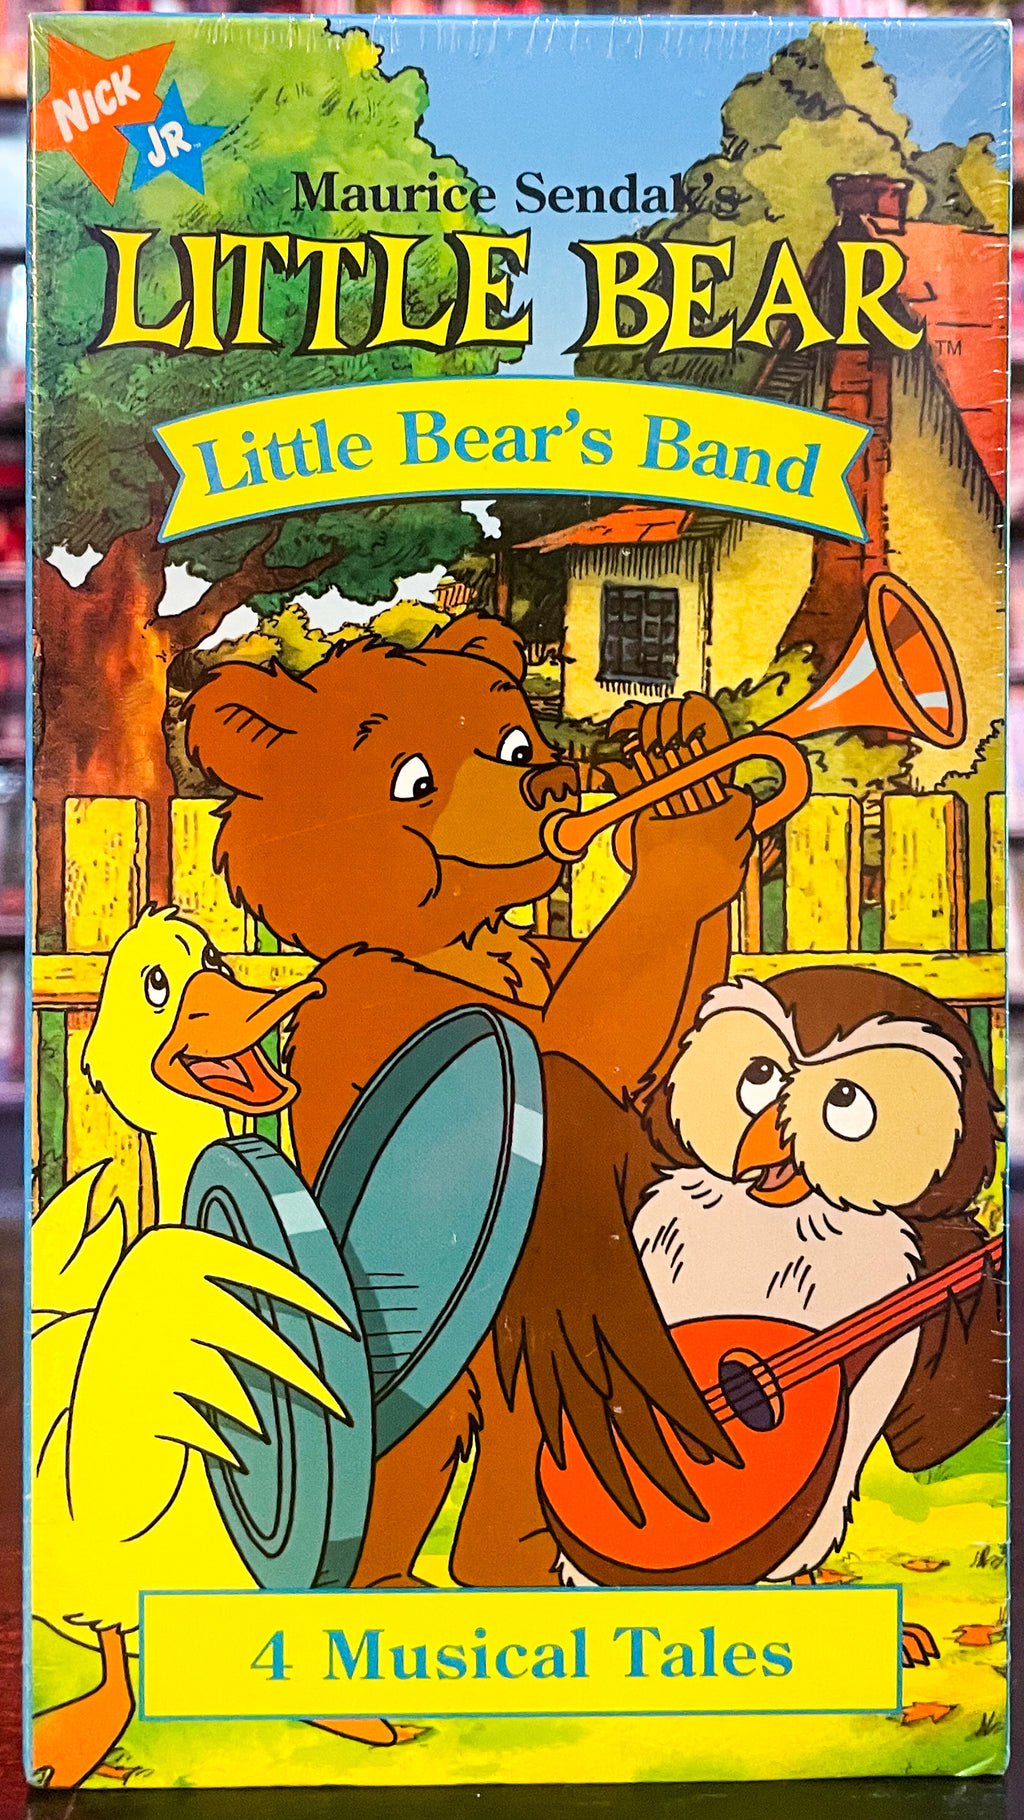 Little Bear: Little Bear’s Band